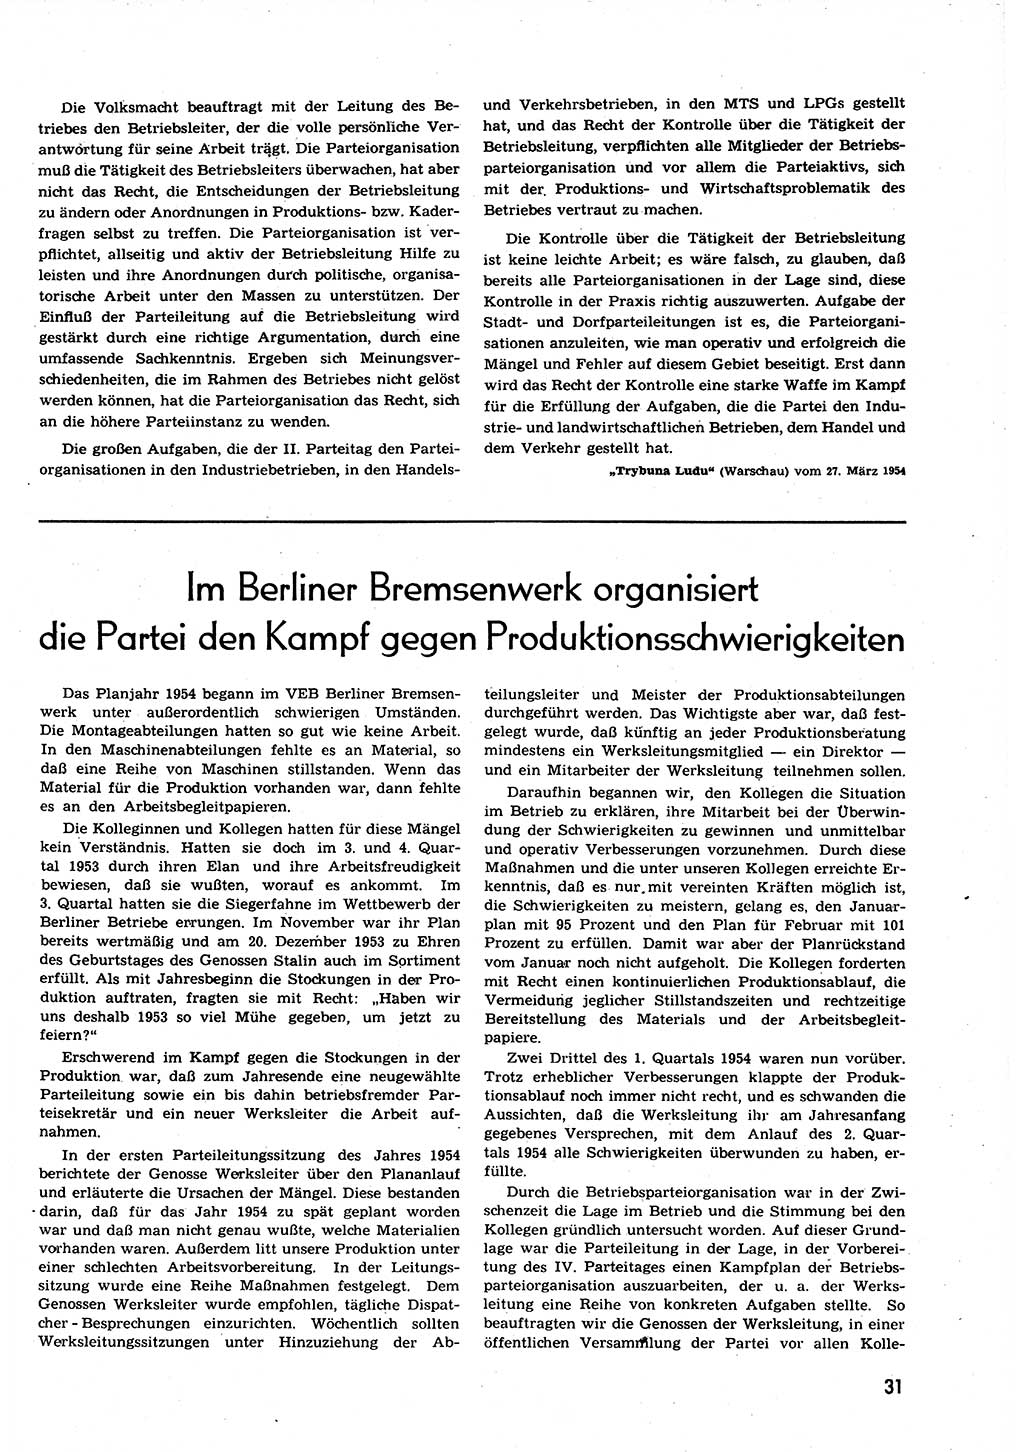 Neuer Weg (NW), Organ des Zentralkomitees (ZK) der SED (Sozialistische Einheitspartei Deutschlands) für alle Parteiarbeiter, 9. Jahrgang [Deutsche Demokratische Republik (DDR)] 1954, Heft 9/31 (NW ZK SED DDR 1954, H. 9/31)